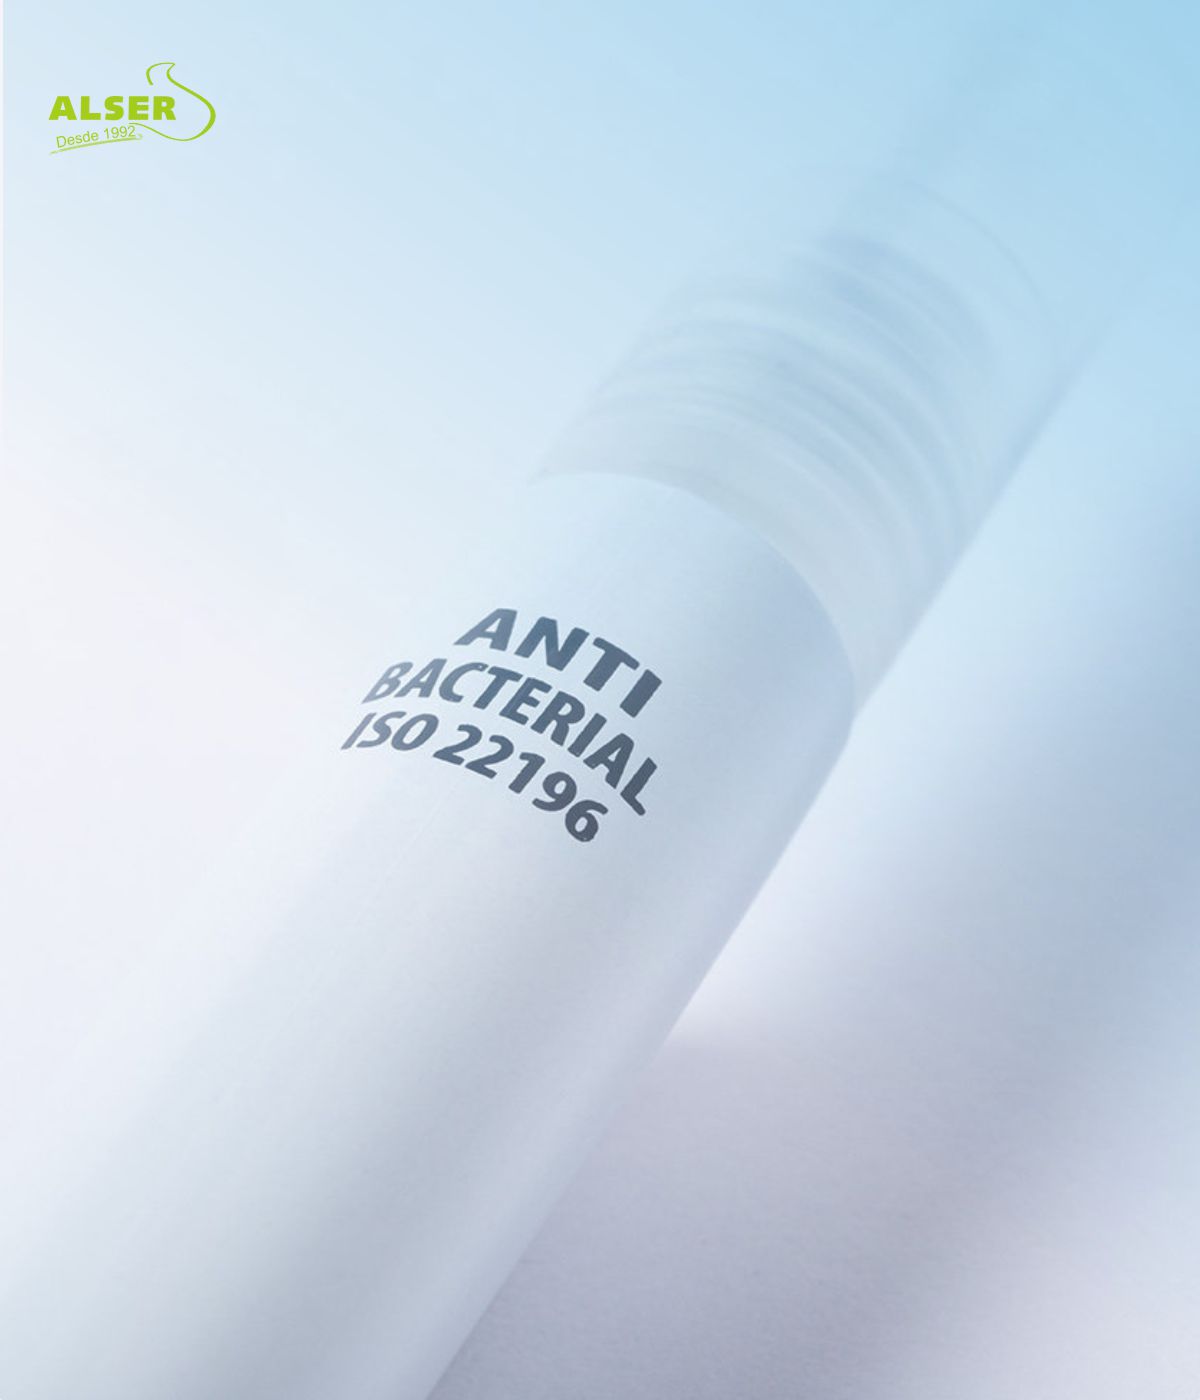 Bolígrafo pulverizador y cuerpo antimicrobiano ISO 22196